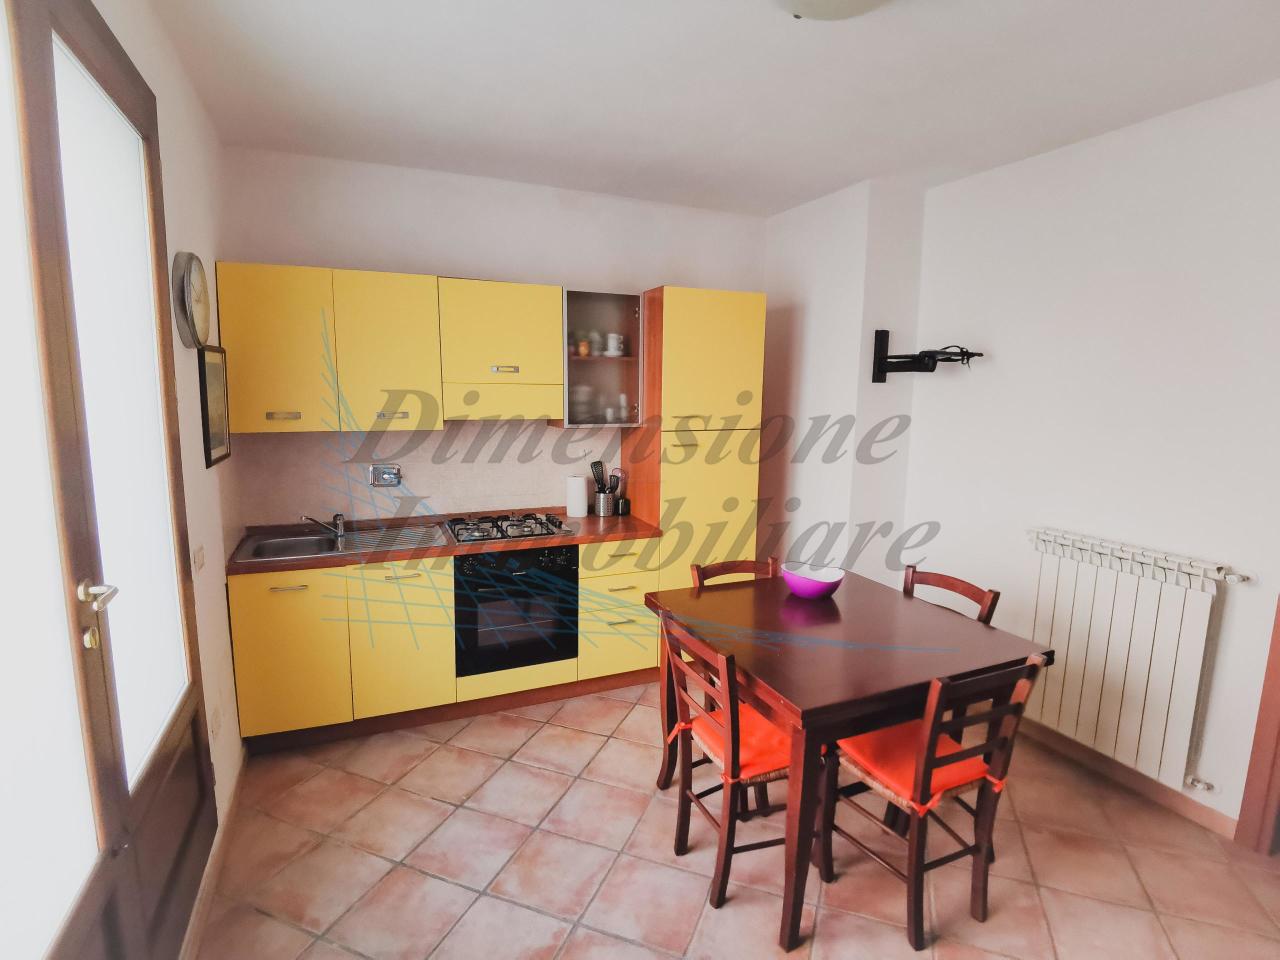 Appartamento in vendita a Riparbella, 2 locali, prezzo € 75.000 | PortaleAgenzieImmobiliari.it